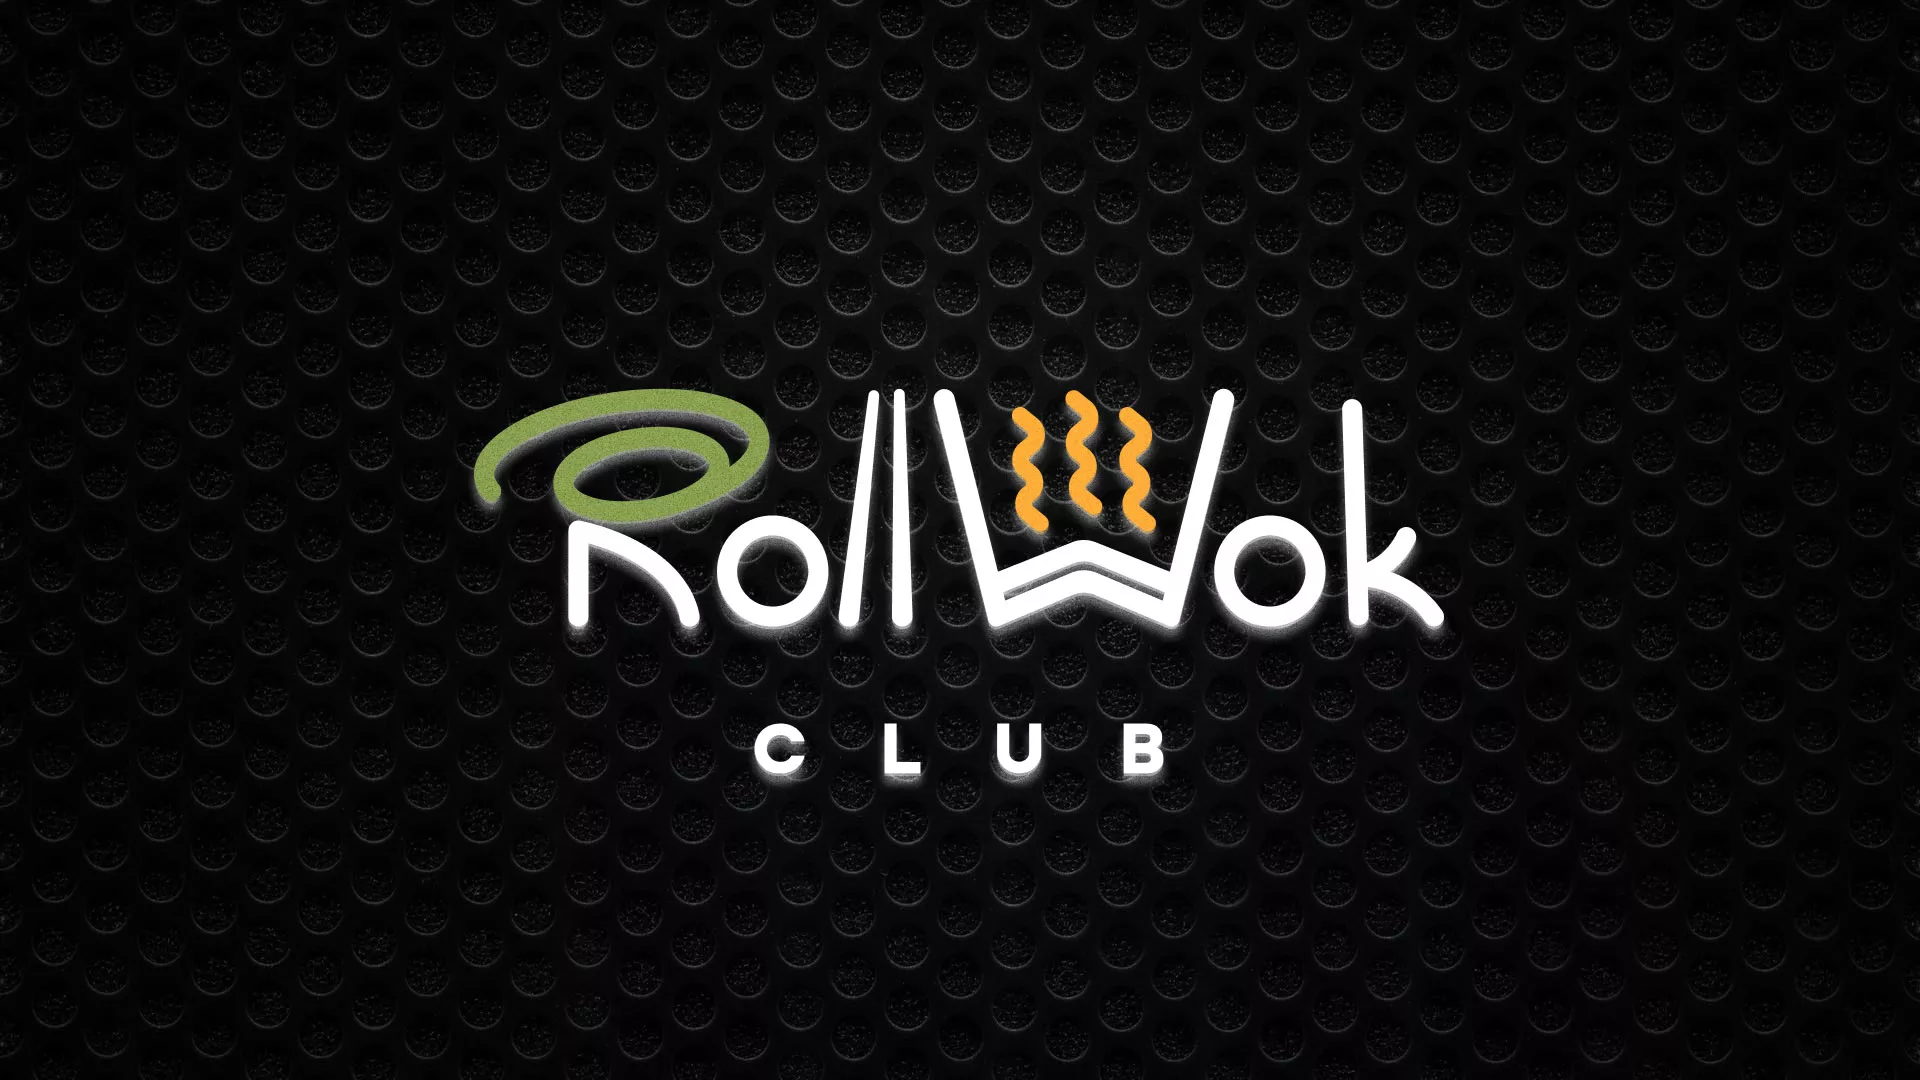 Брендирование торговых точек суши-бара «Roll Wok Club»